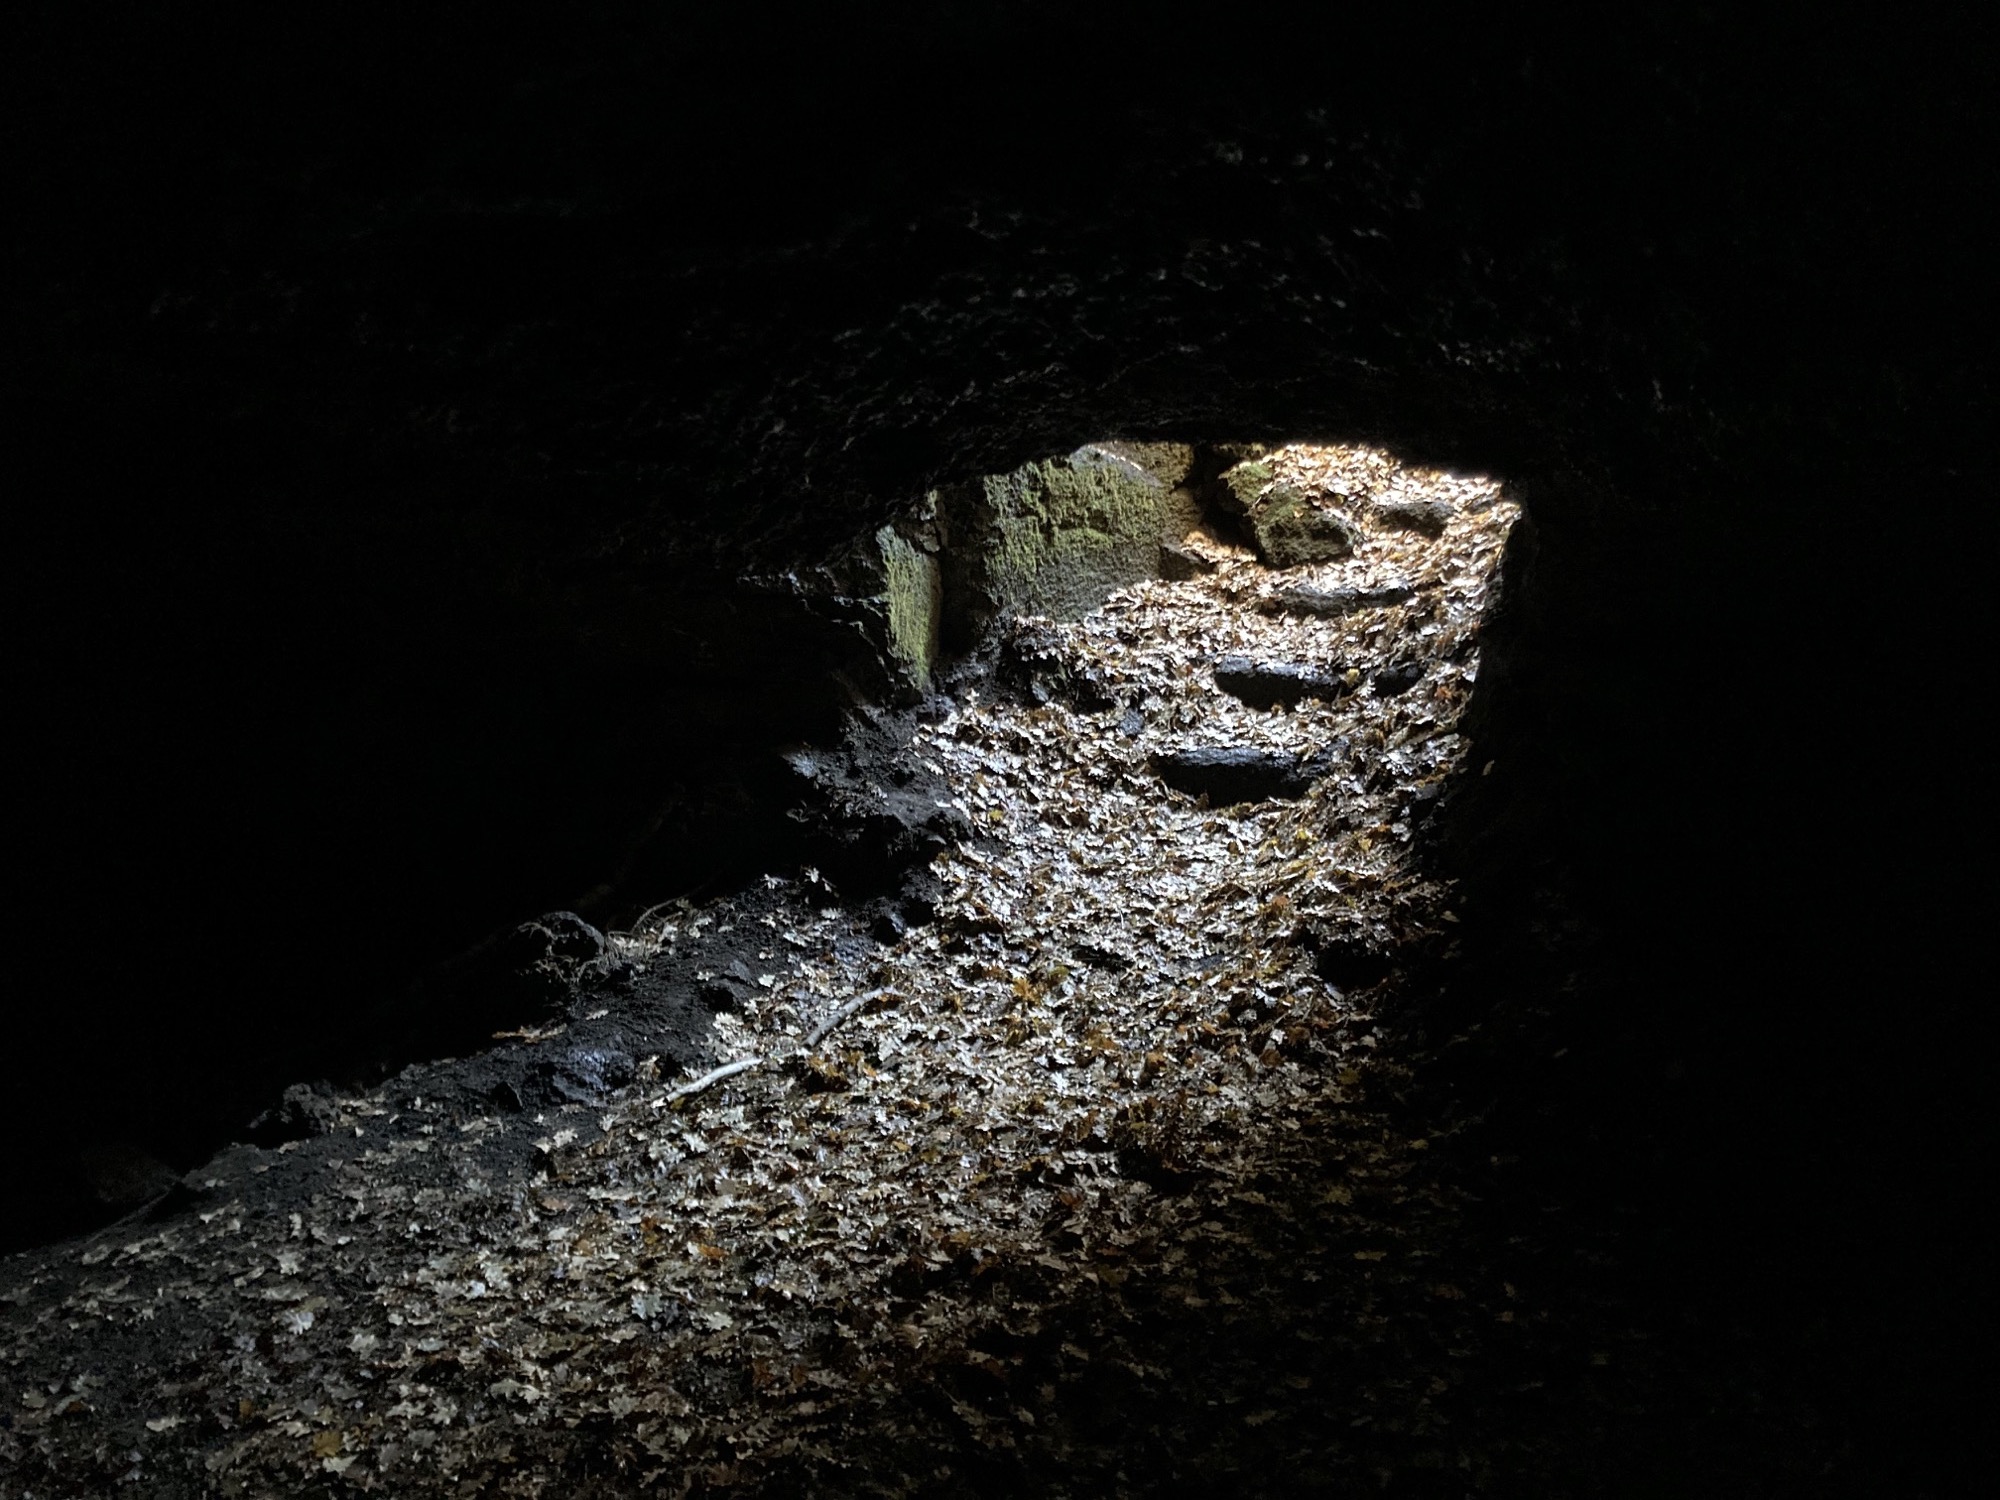 Eingang der Lavahöhle, von innen gesehen, rauhe Stufen, von Eichenlaub großteils verdeckt